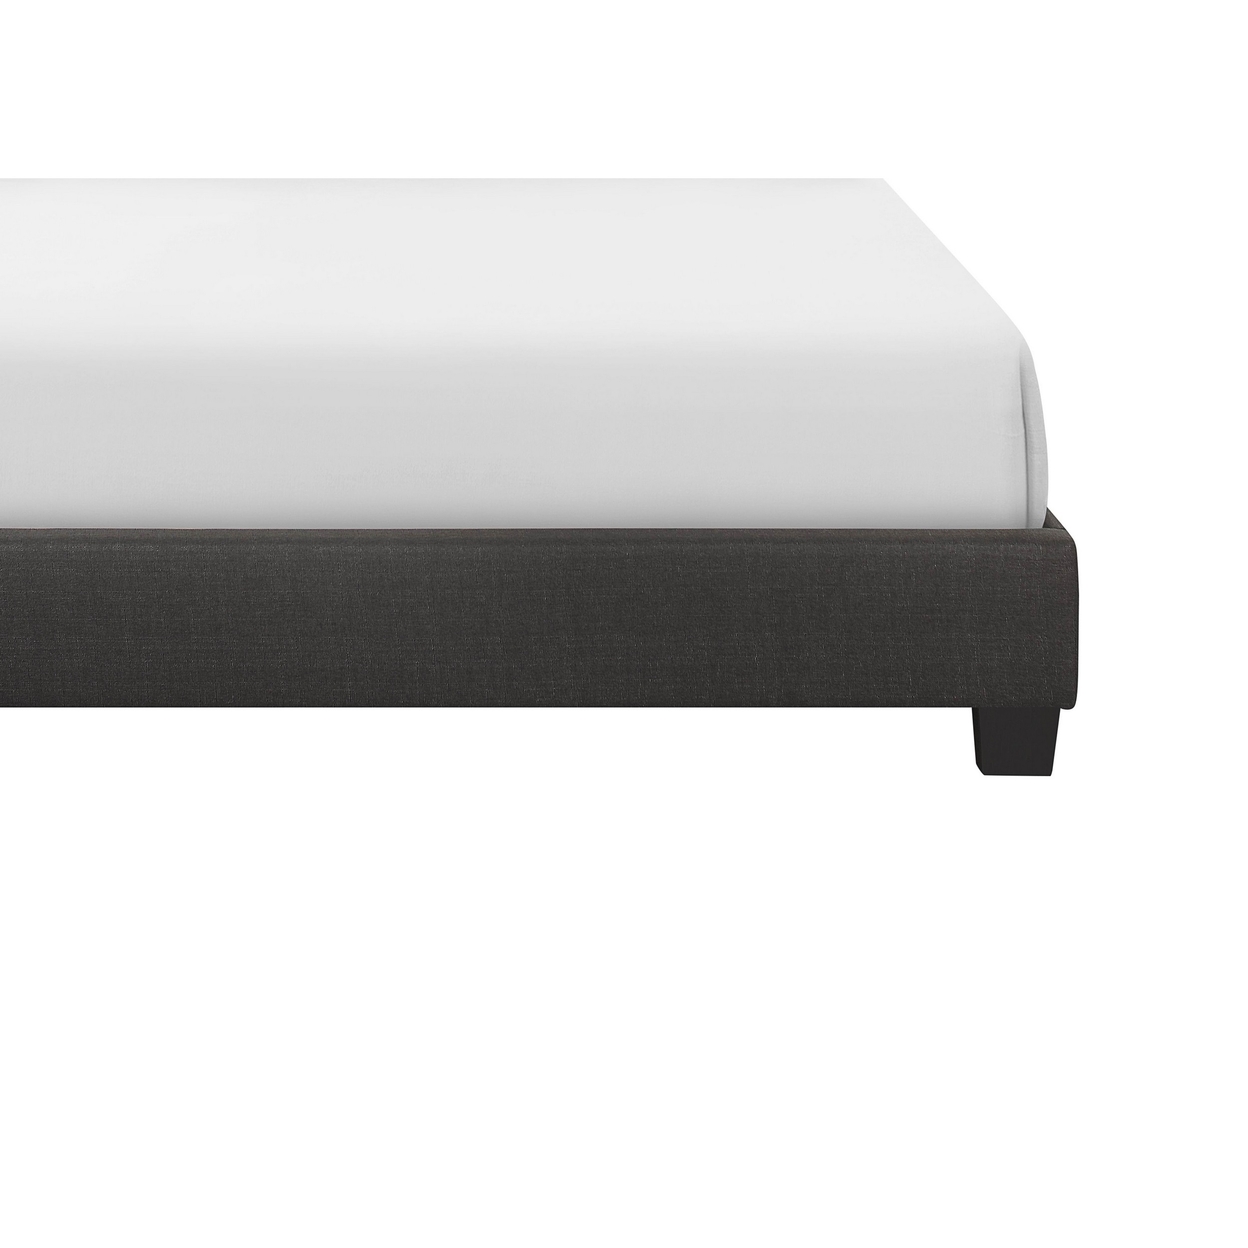 Dane Full Size Bed, Fully Upholstered, Tufted Curved Headboard, Dark Gray- Saltoro Sherpi